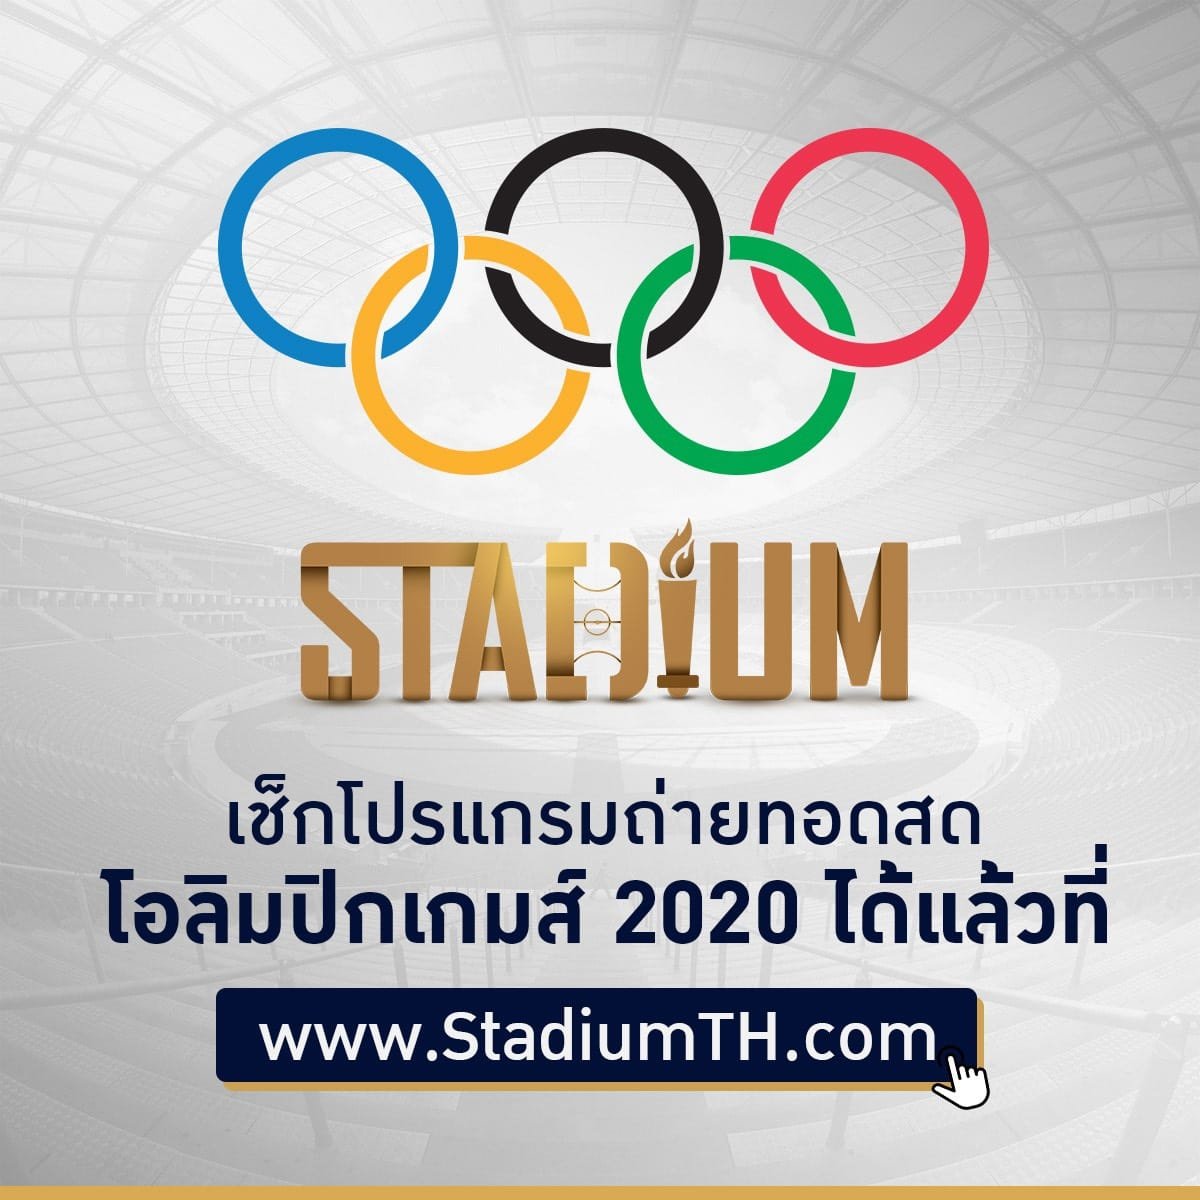 โหมโรงโตเกียว 2020 เปิดคิวยิงสดฟุตบอล รอบแรก ก่อนเปิดฉากโอลิมปิกเกมส์ 6 ช่องฟรีทีวี 